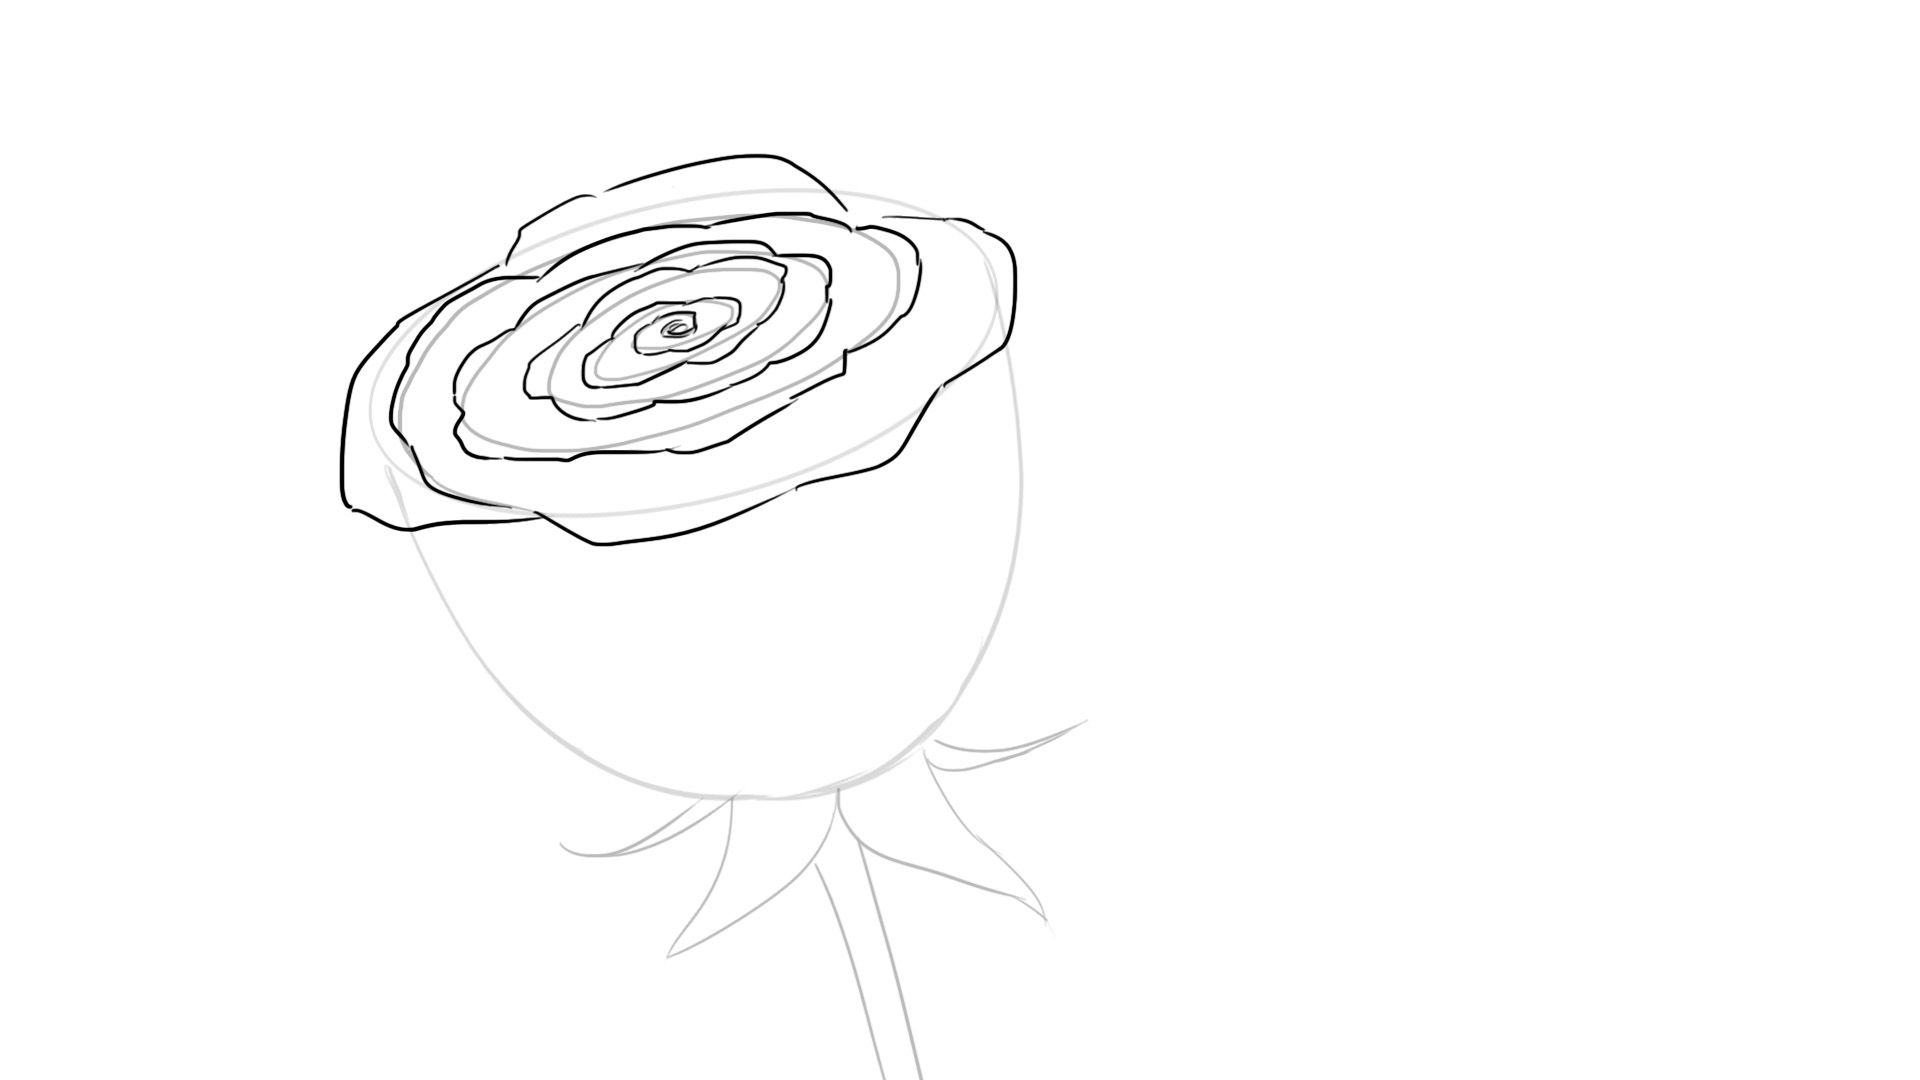 Comment Dessiner Une Rose En 2020  Dessin Rose, Comment dedans Image De Rose A Dessiner